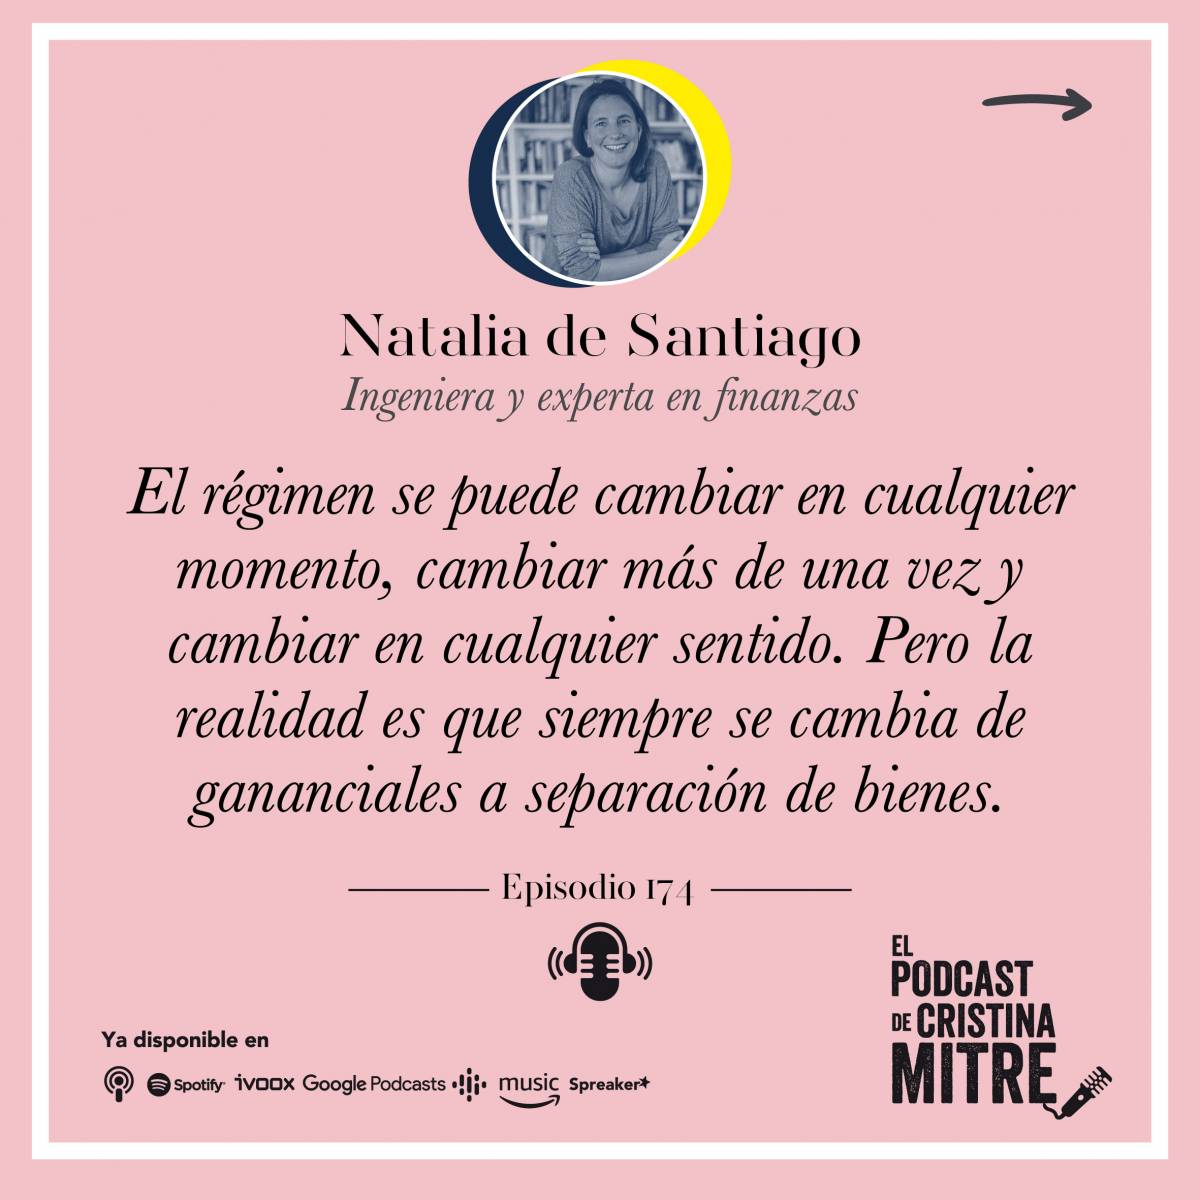 Cristina Mitre Natalia de Santiago separación de bienes